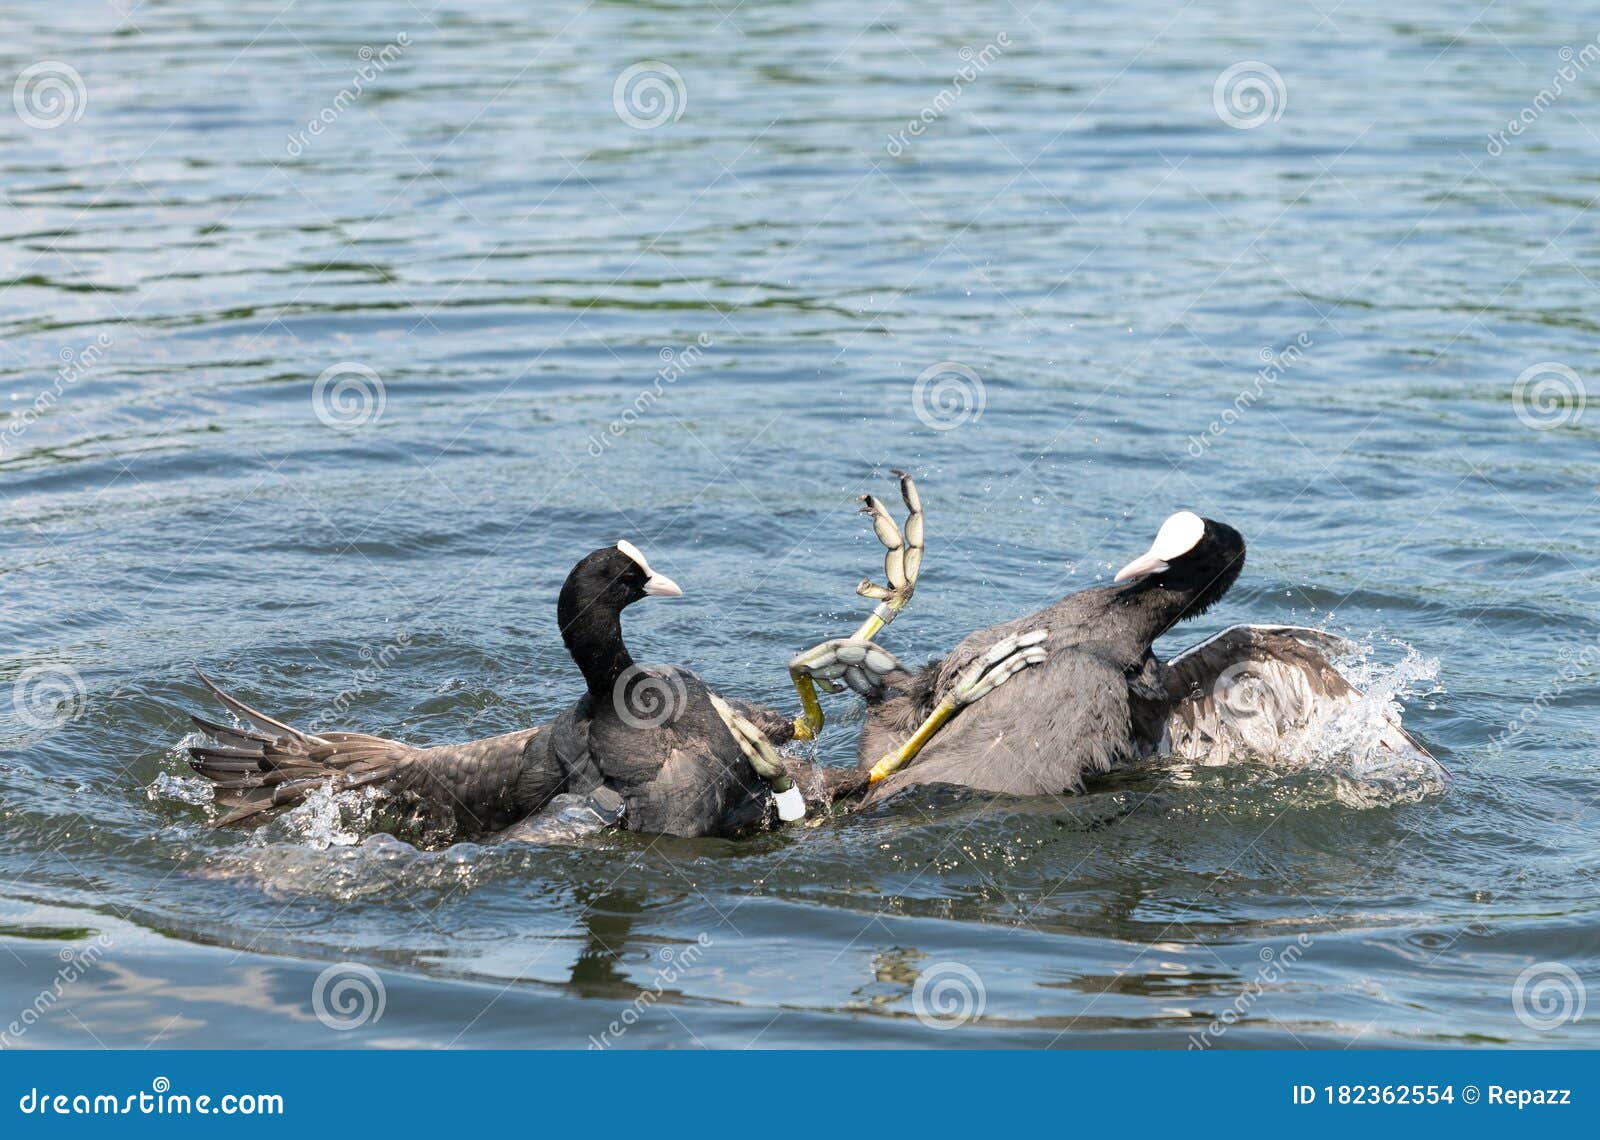 福利卡阿特拉鸟. 欧亚古特·富利卡·阿特拉鸟在水中用爪子战斗